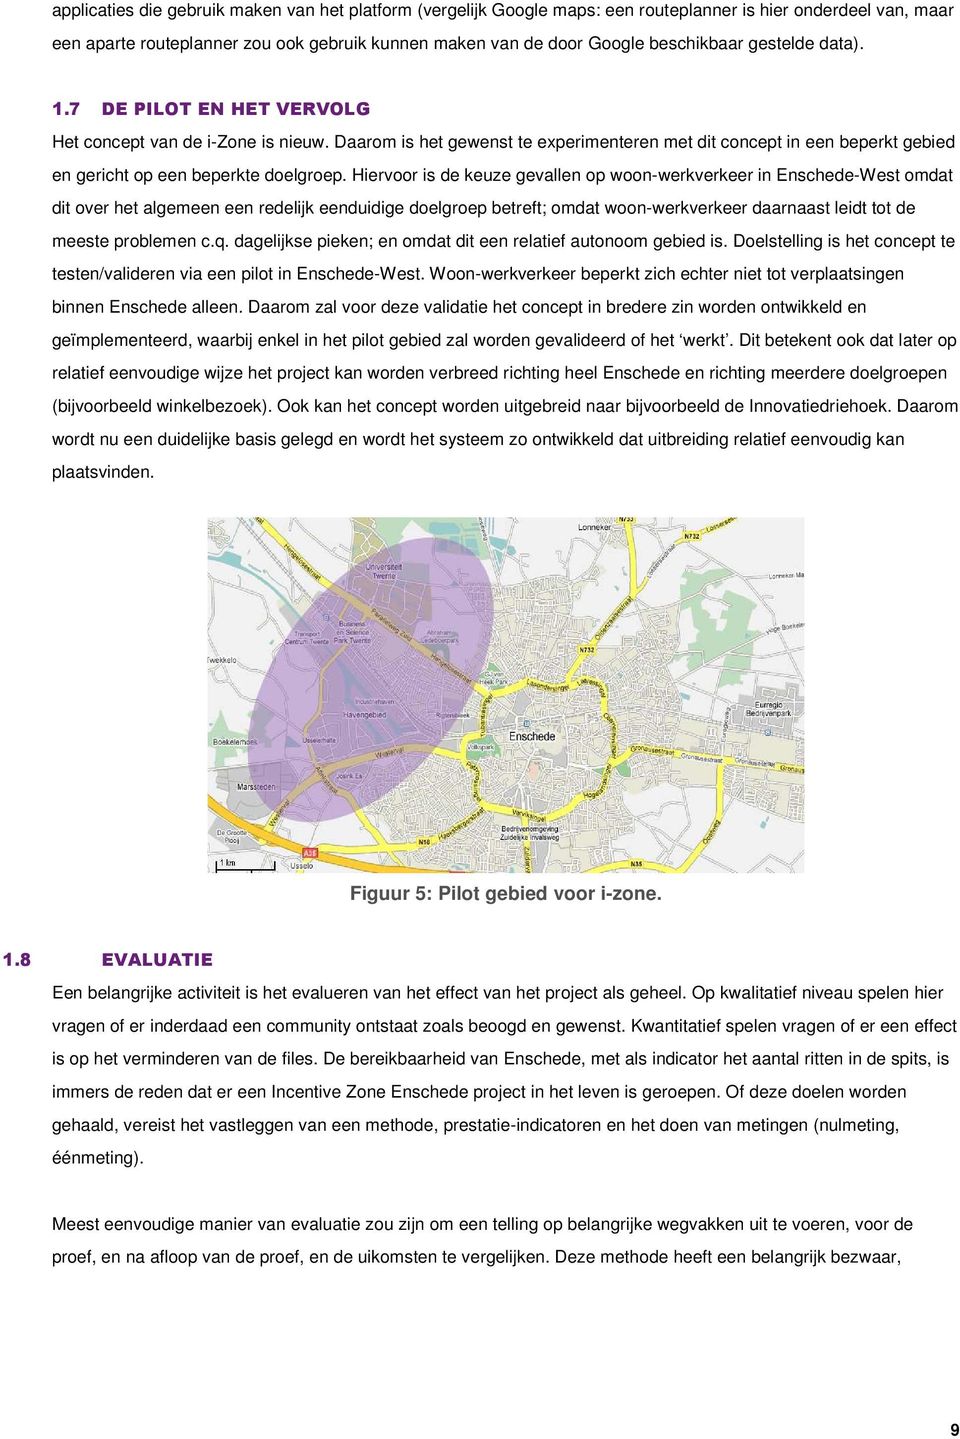 Hiervoor is de keuze gevallen op woon-werkverkeer in Enschede-West omdat dit over het algemeen een redelijk eenduidige doelgroep betreft; omdat woon-werkverkeer daarnaast leidt tot de meeste